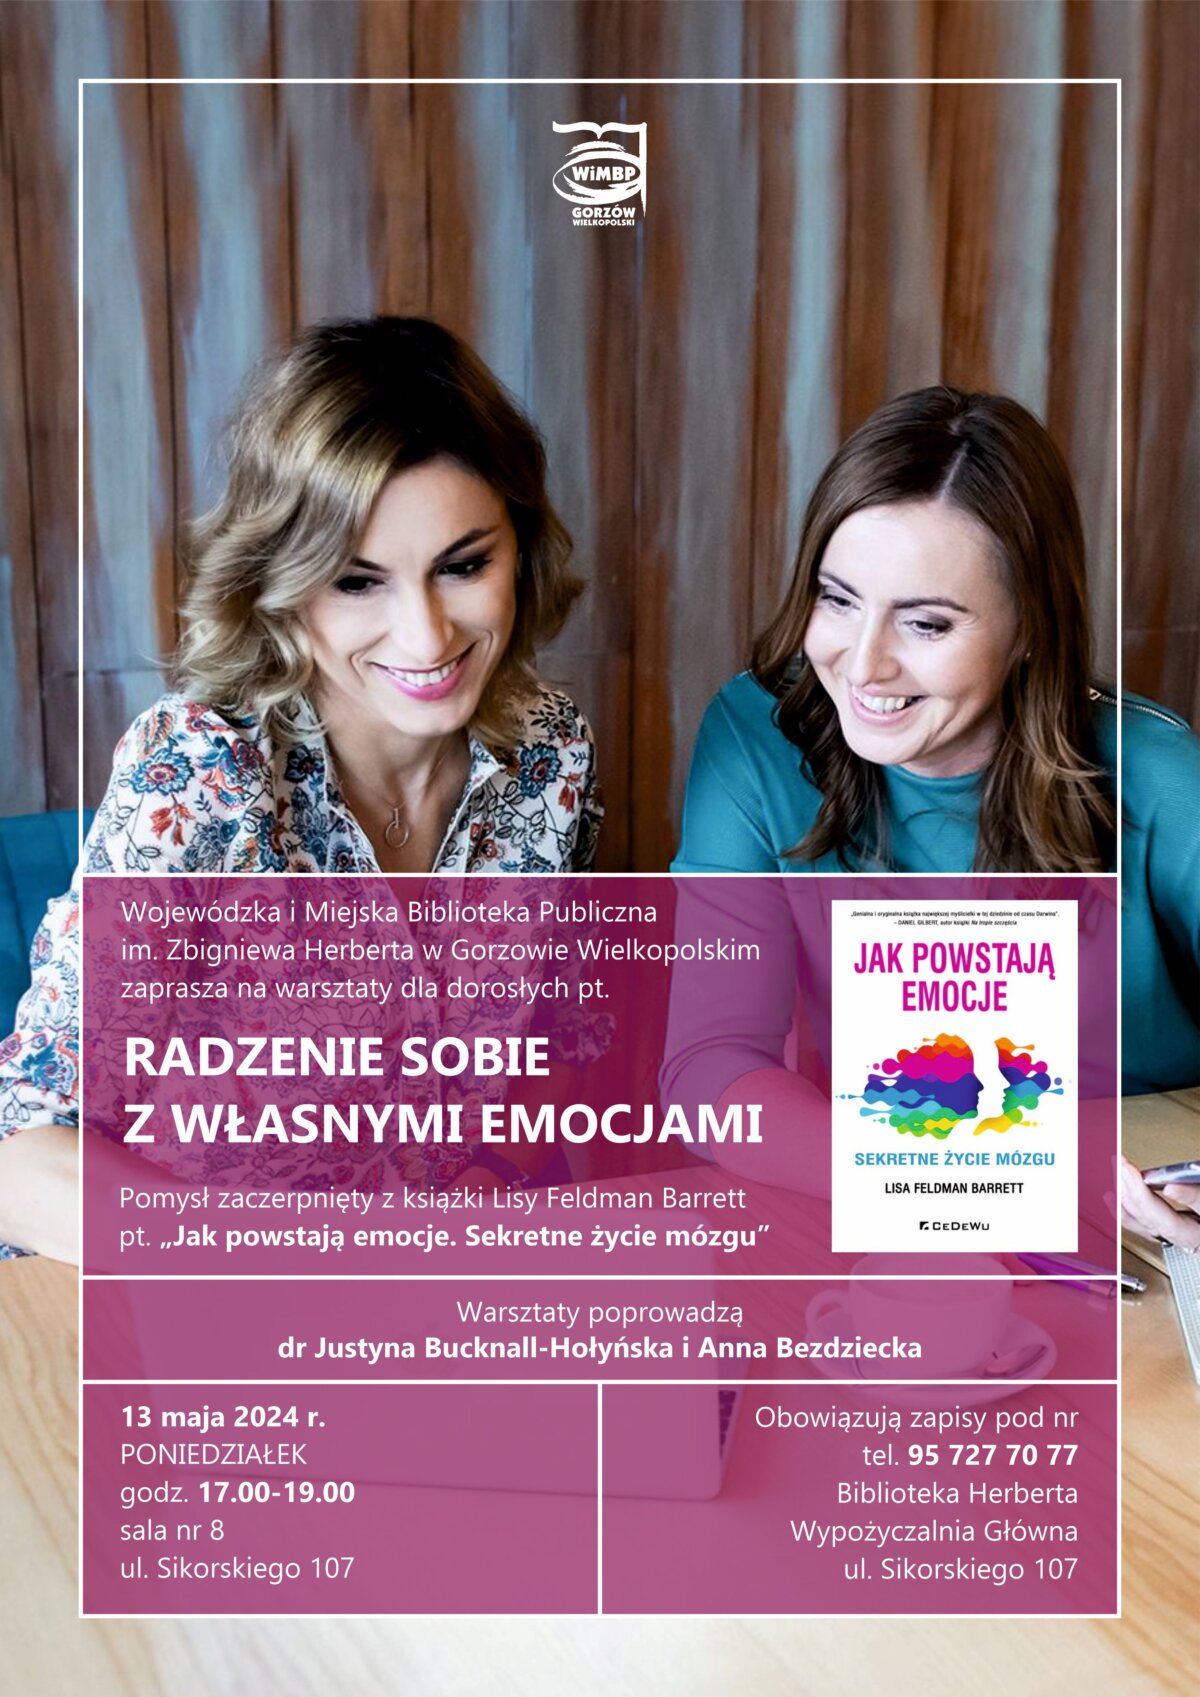 Plakat promujący wydarzenie z okładką książki i zdjęciami dwóch kobiet.